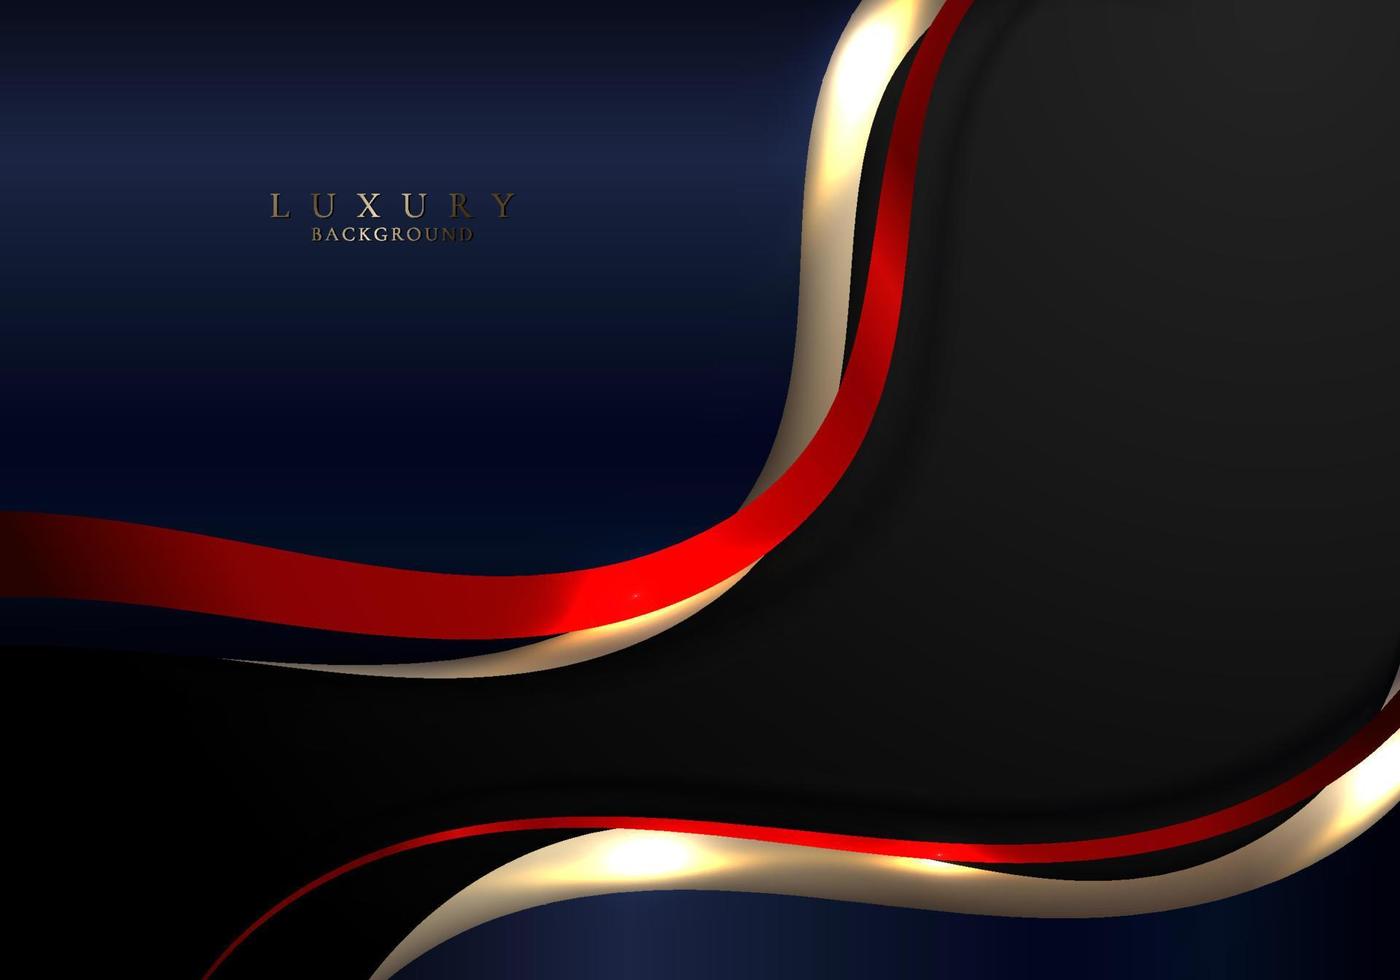 abstrakte elegante gold-, rot- und blaugeschwungene wellenlinien mit glänzendem, funkelndem licht auf schwarzem hintergrundluxusstil vektor